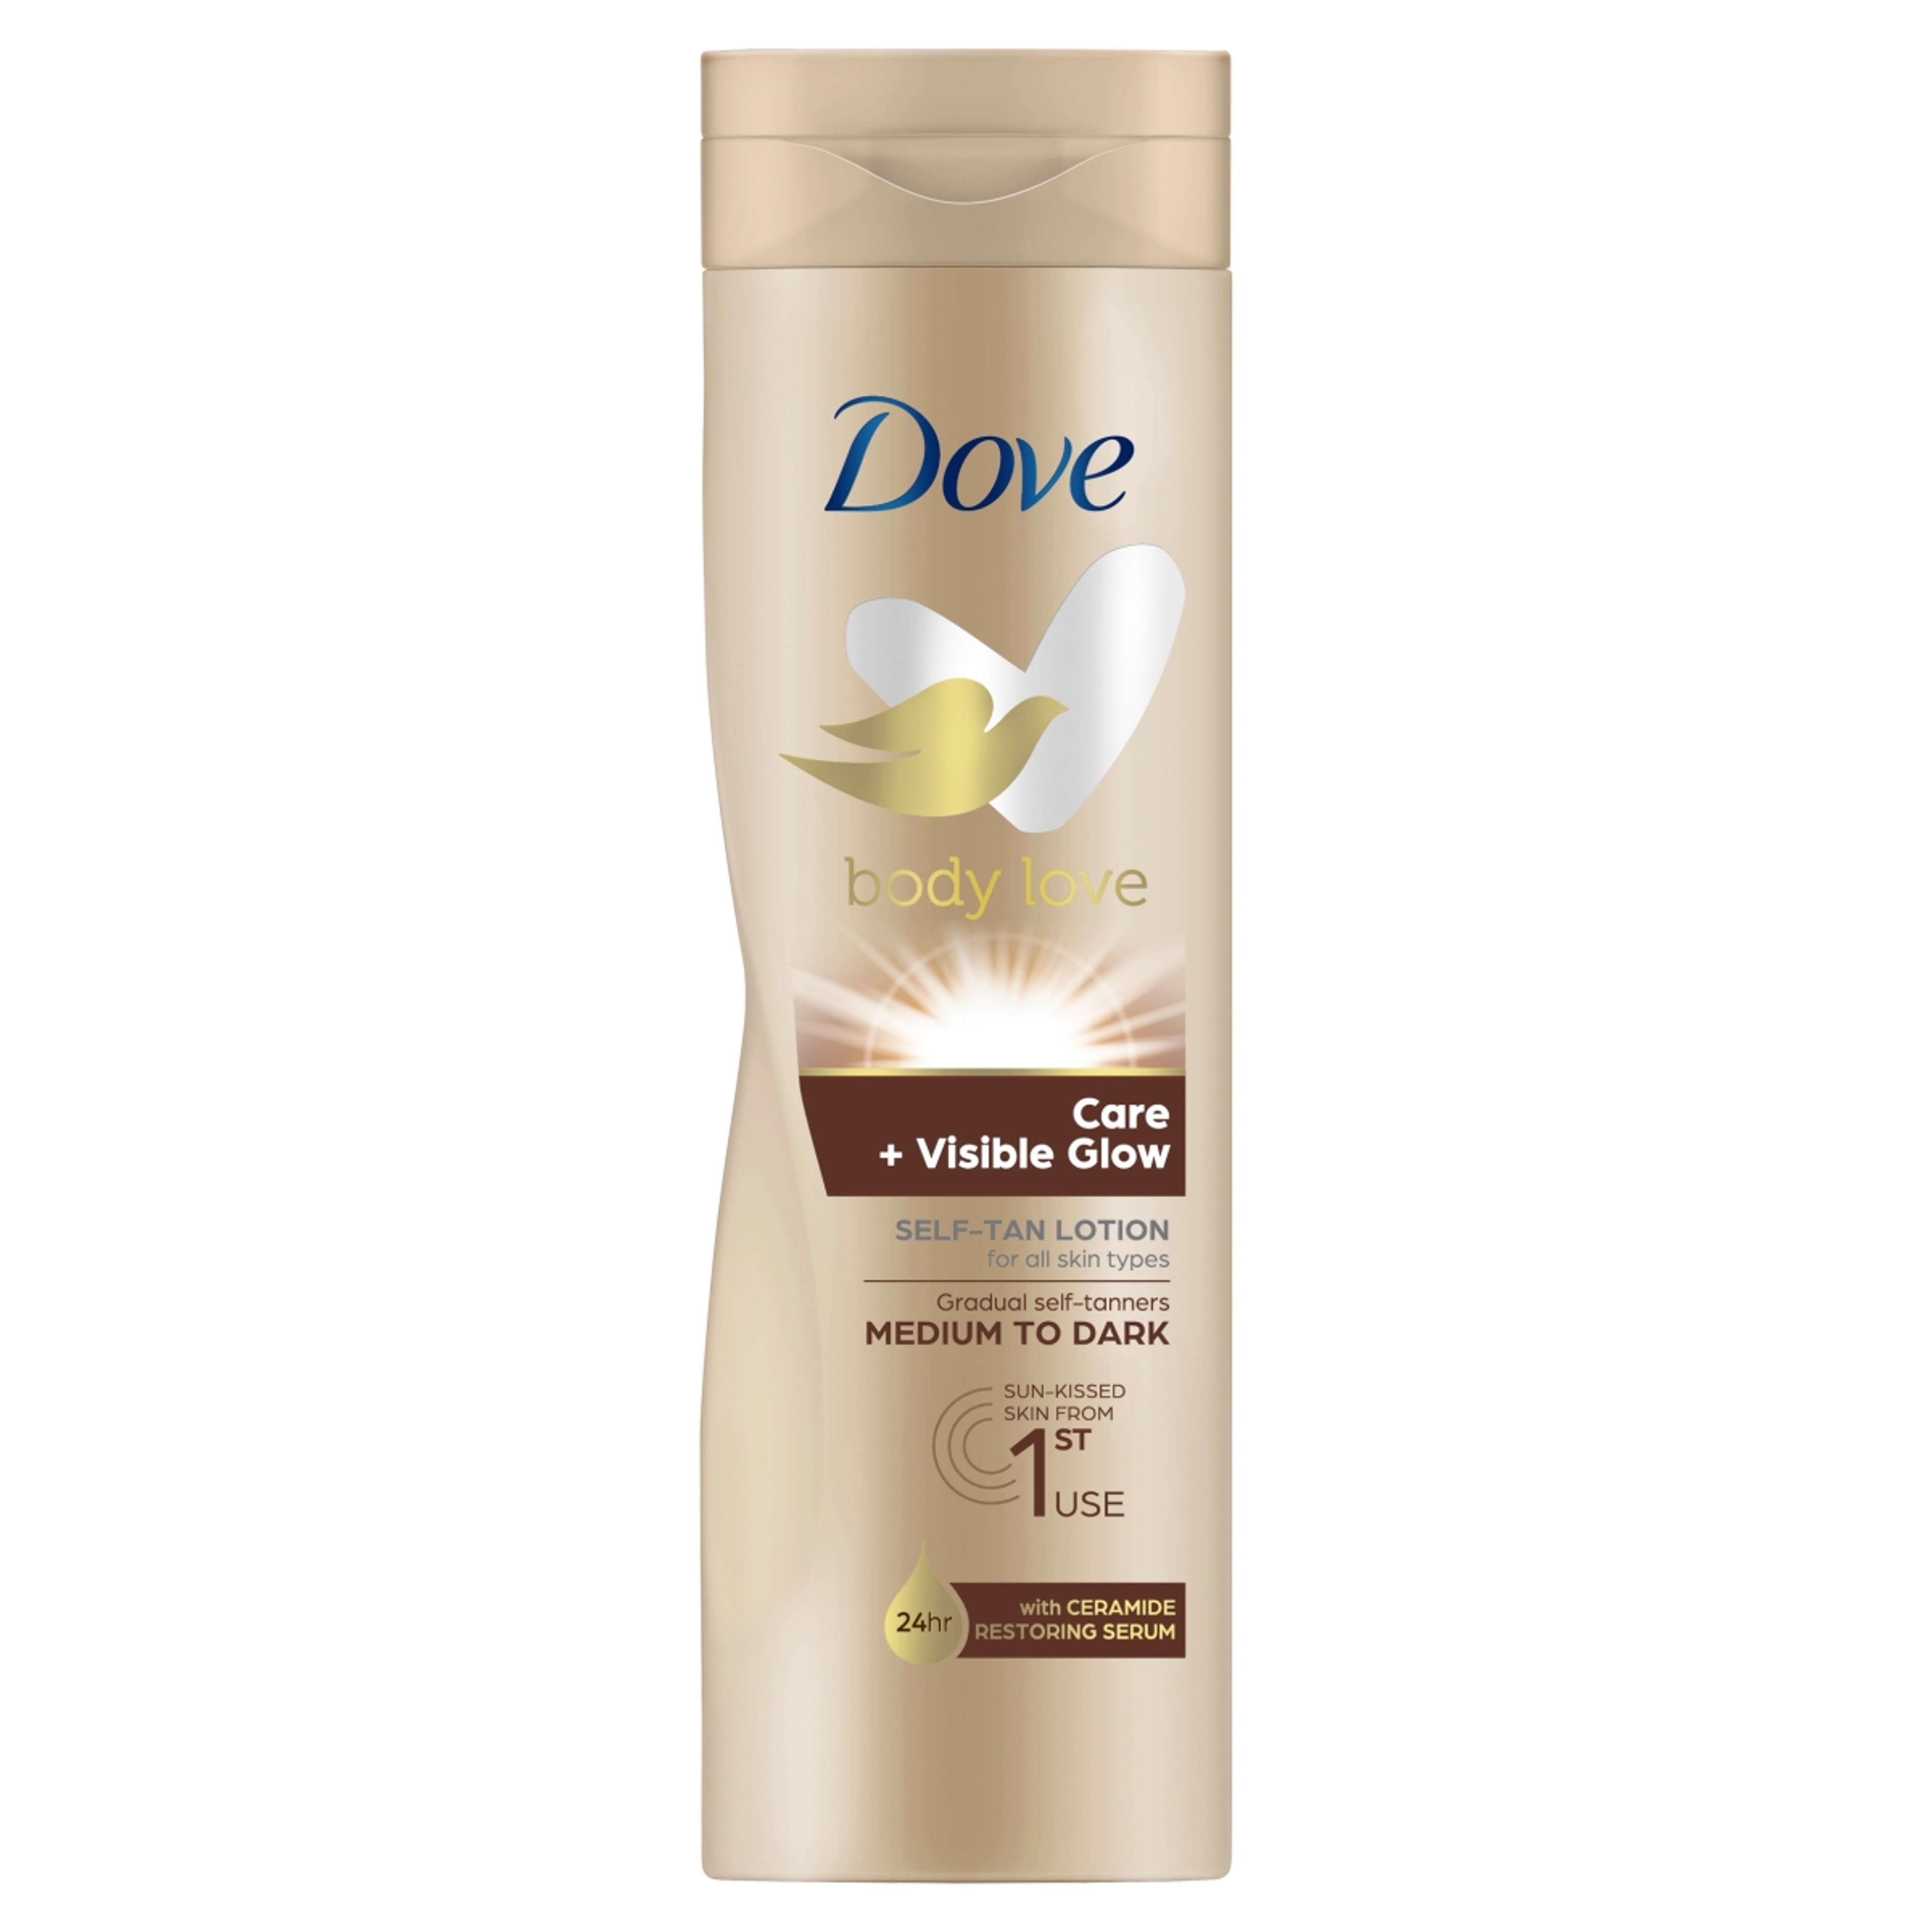 Dove Body Love Care + Visible Glow önbarnító testápoló a közepes-sötét árnyalatú bőrért - 250 ml-1